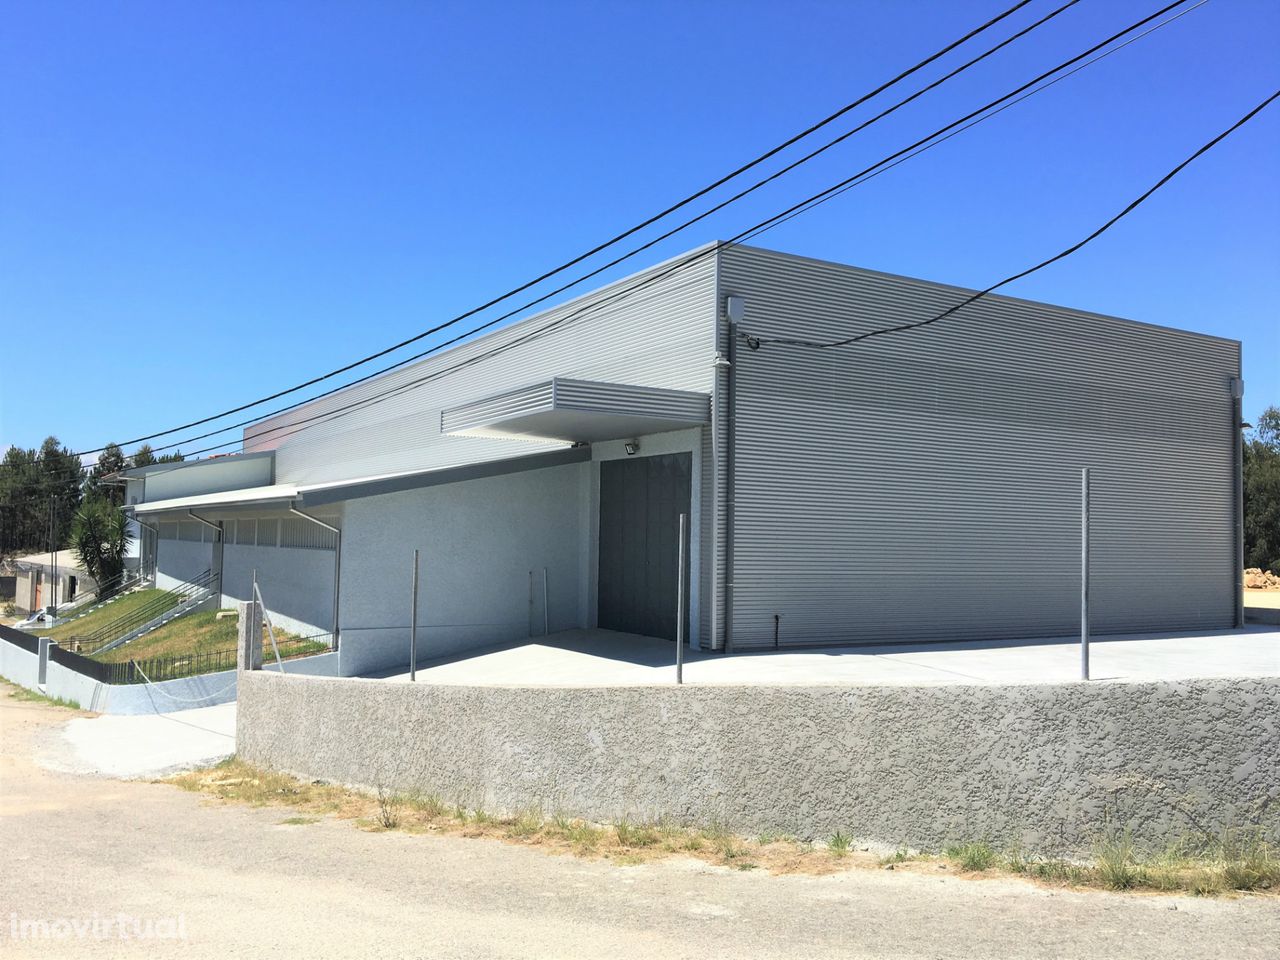 Fábrica/Indústria  Arrendamento em São Roque,Oliveira de Azeméis